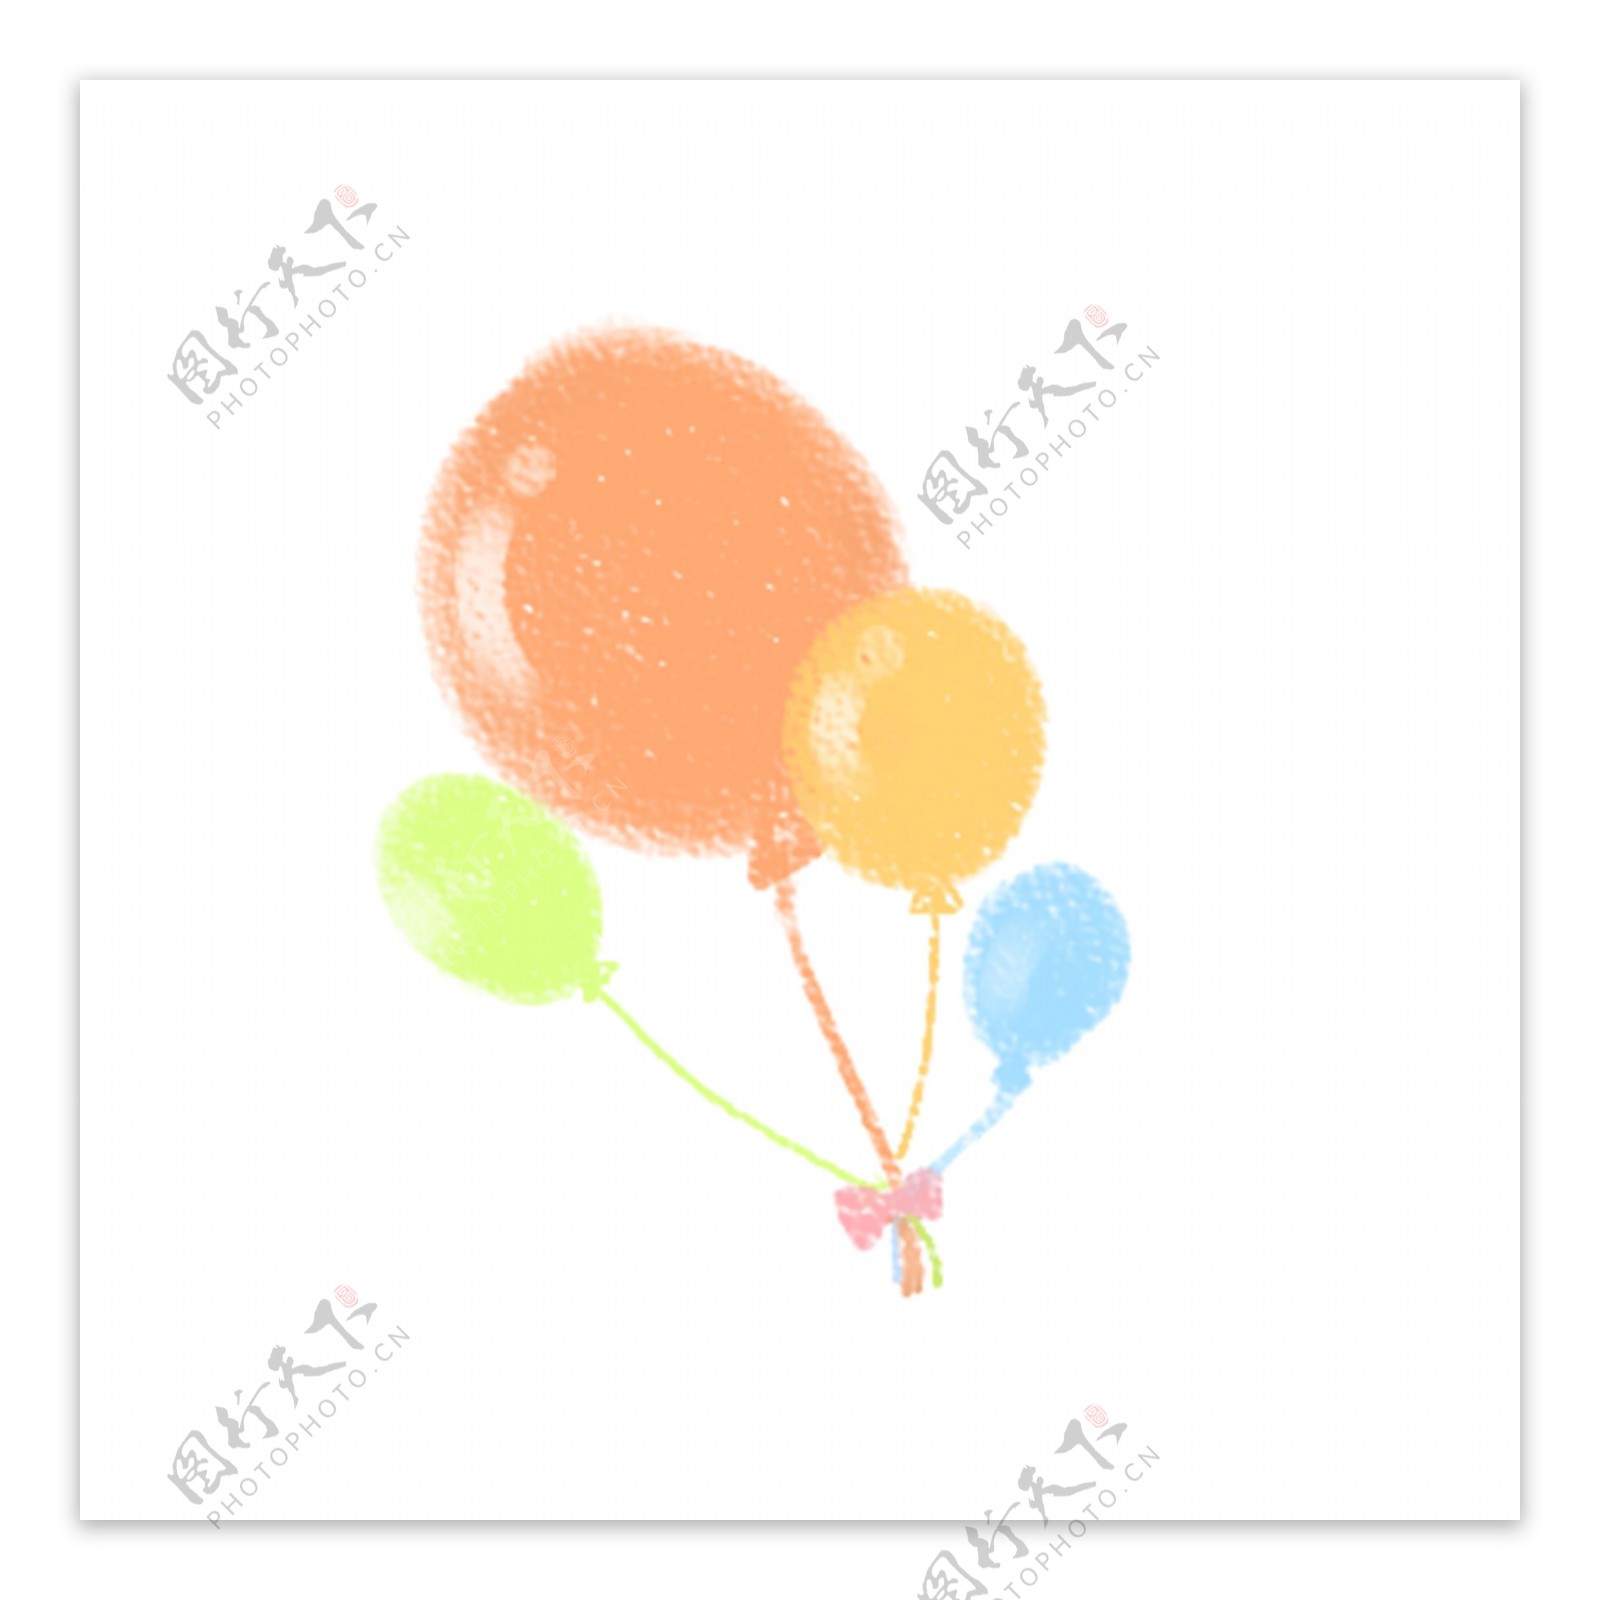 彩色的气球免抠图